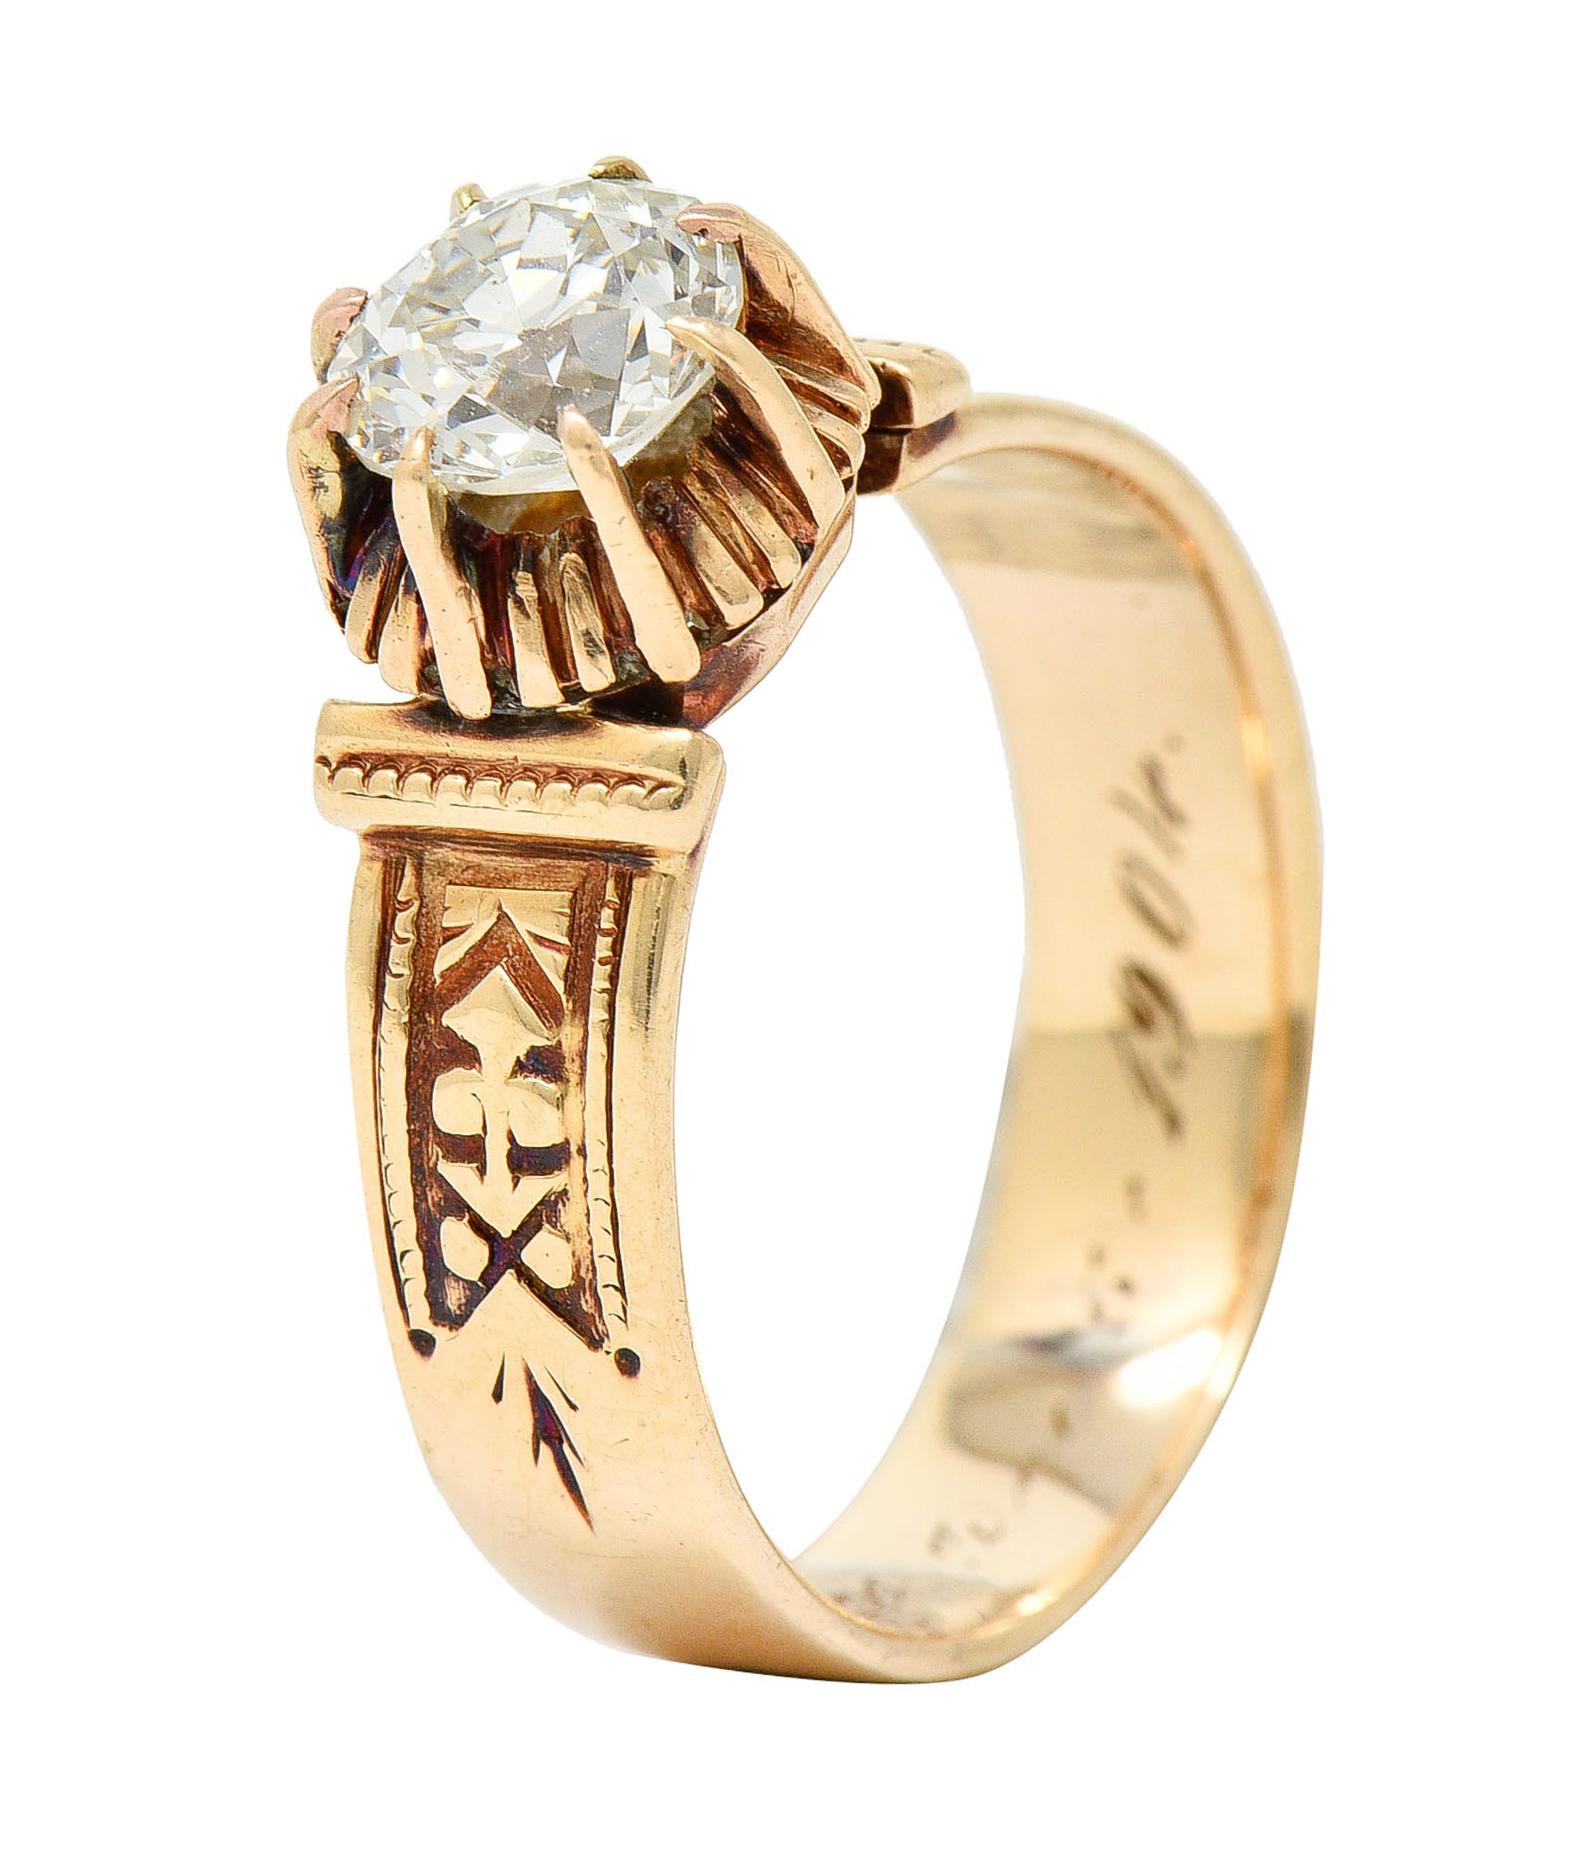 1904 Victorian 0.93 Carat Diamond 14 Karat Gold Engagement Ring GIA 8